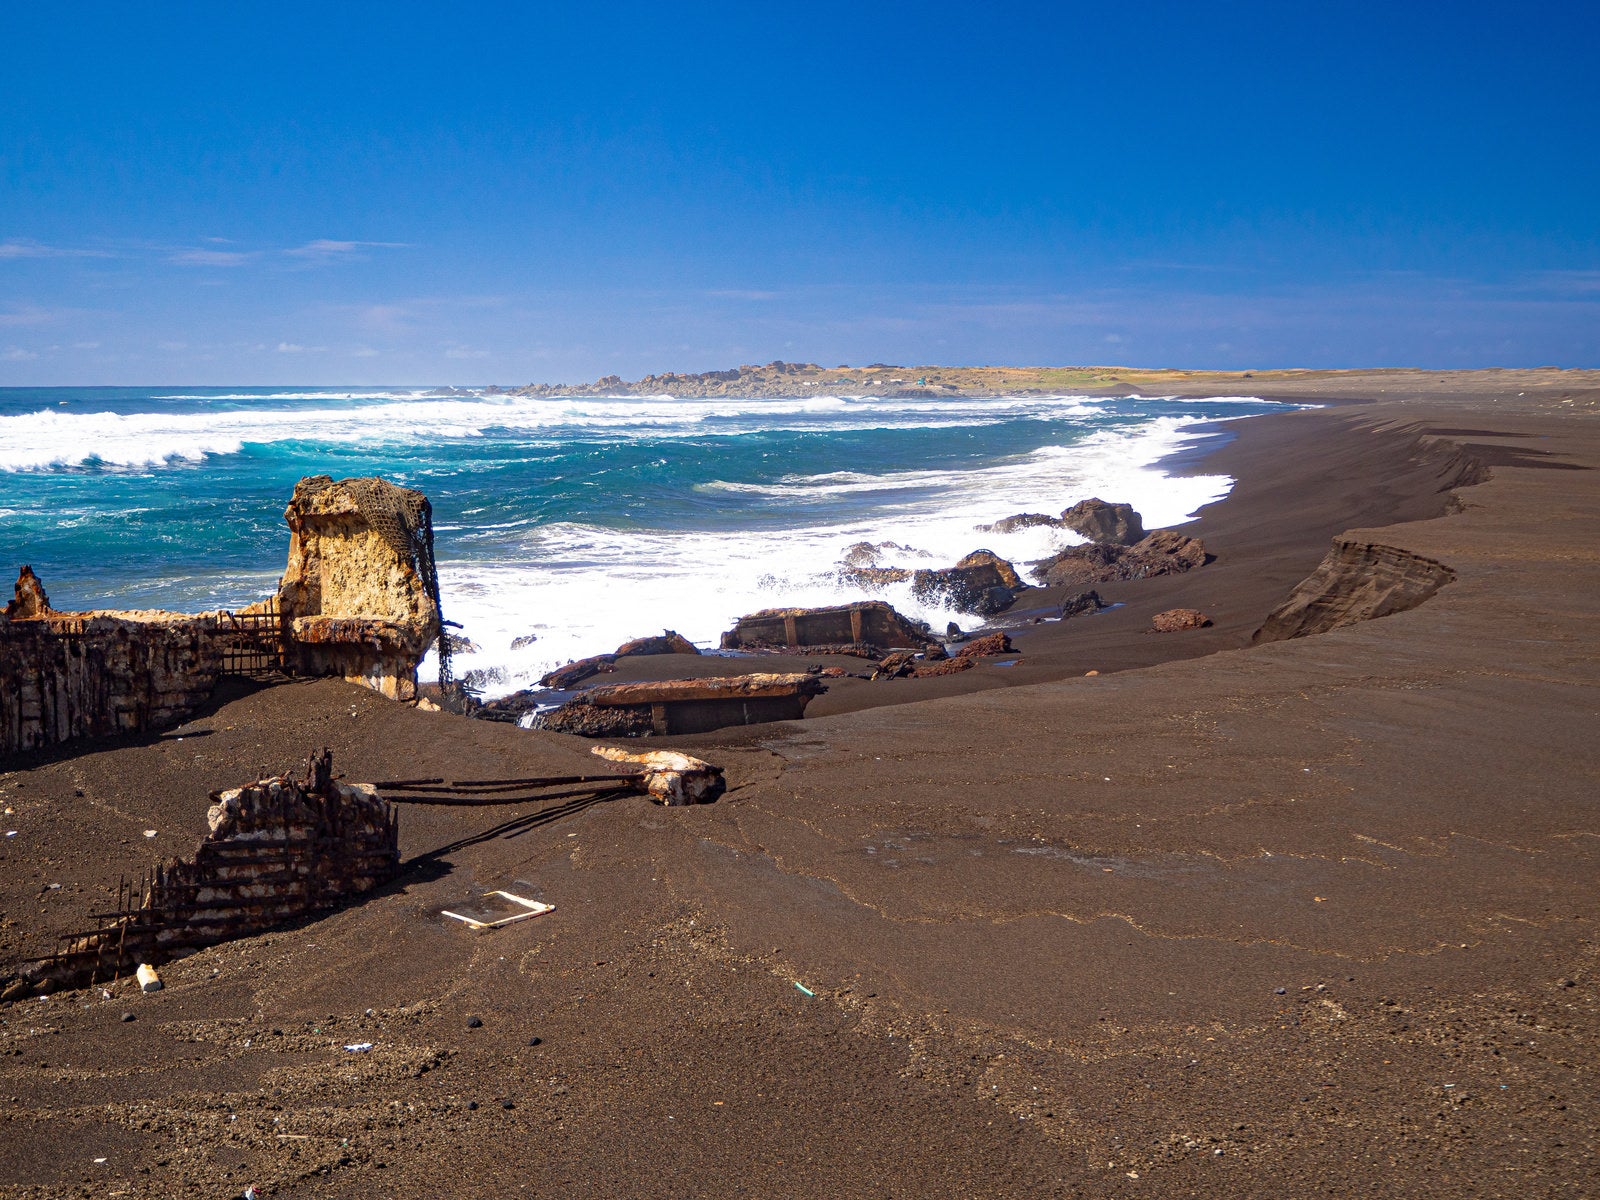 「千鳥ヶ浜の波打ち際で波に洗われる船の残骸と奥に見える釜岩」の写真